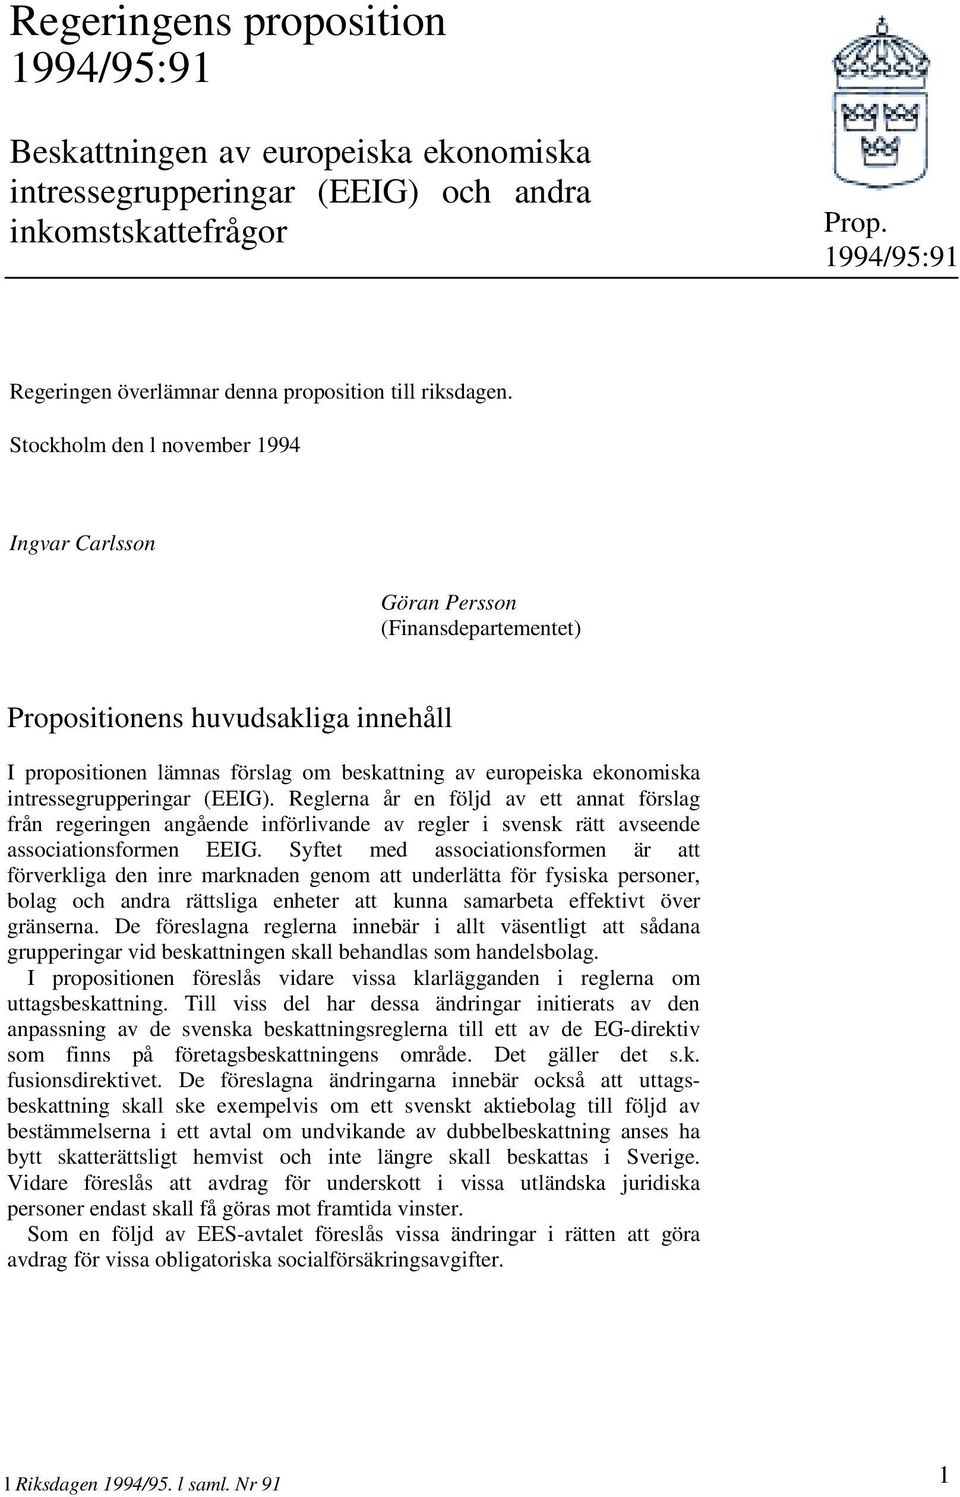 Stockholm den l november 1994 Ingvar Carlsson Göran Persson (Finansdepartementet) Propositionens huvudsakliga innehåll I propositionen lämnas förslag om beskattning av europeiska ekonomiska